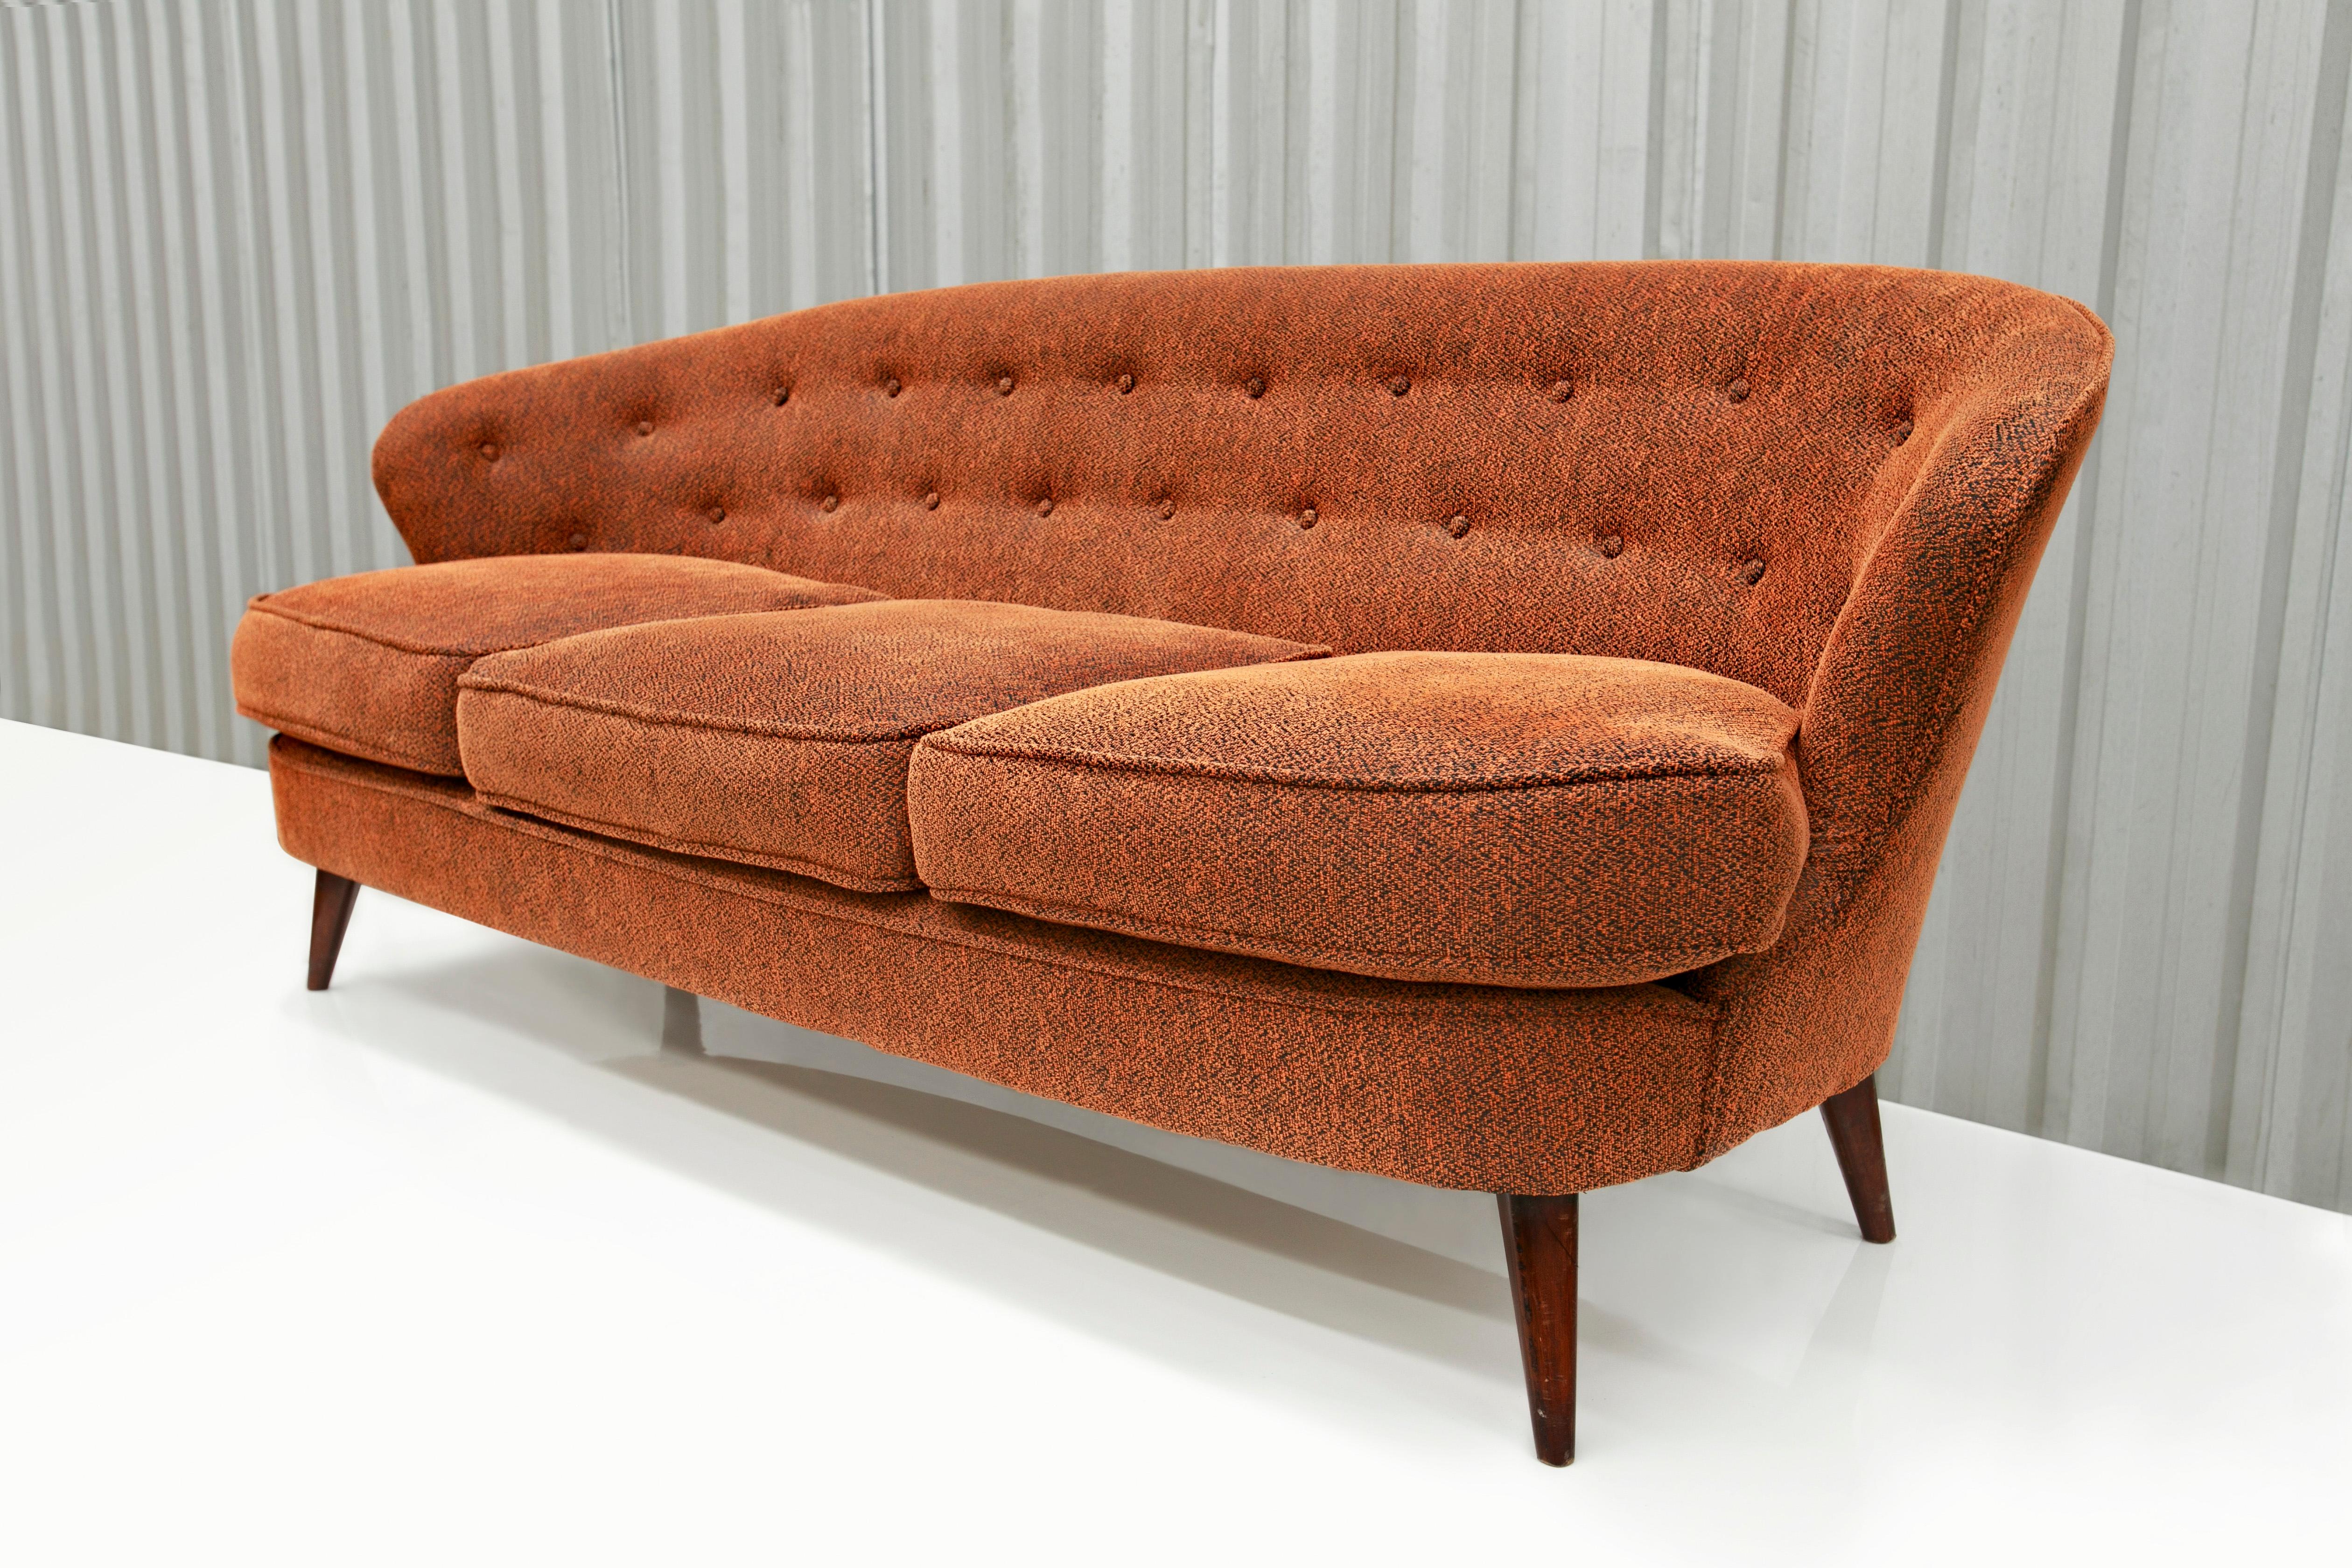 Disponible dès maintenant, ce magnifique canapé moderne brésilien, conçu par Joaquim Tenreiro dans les années 60, est absolument magnifique. Le modèle s'appelle 